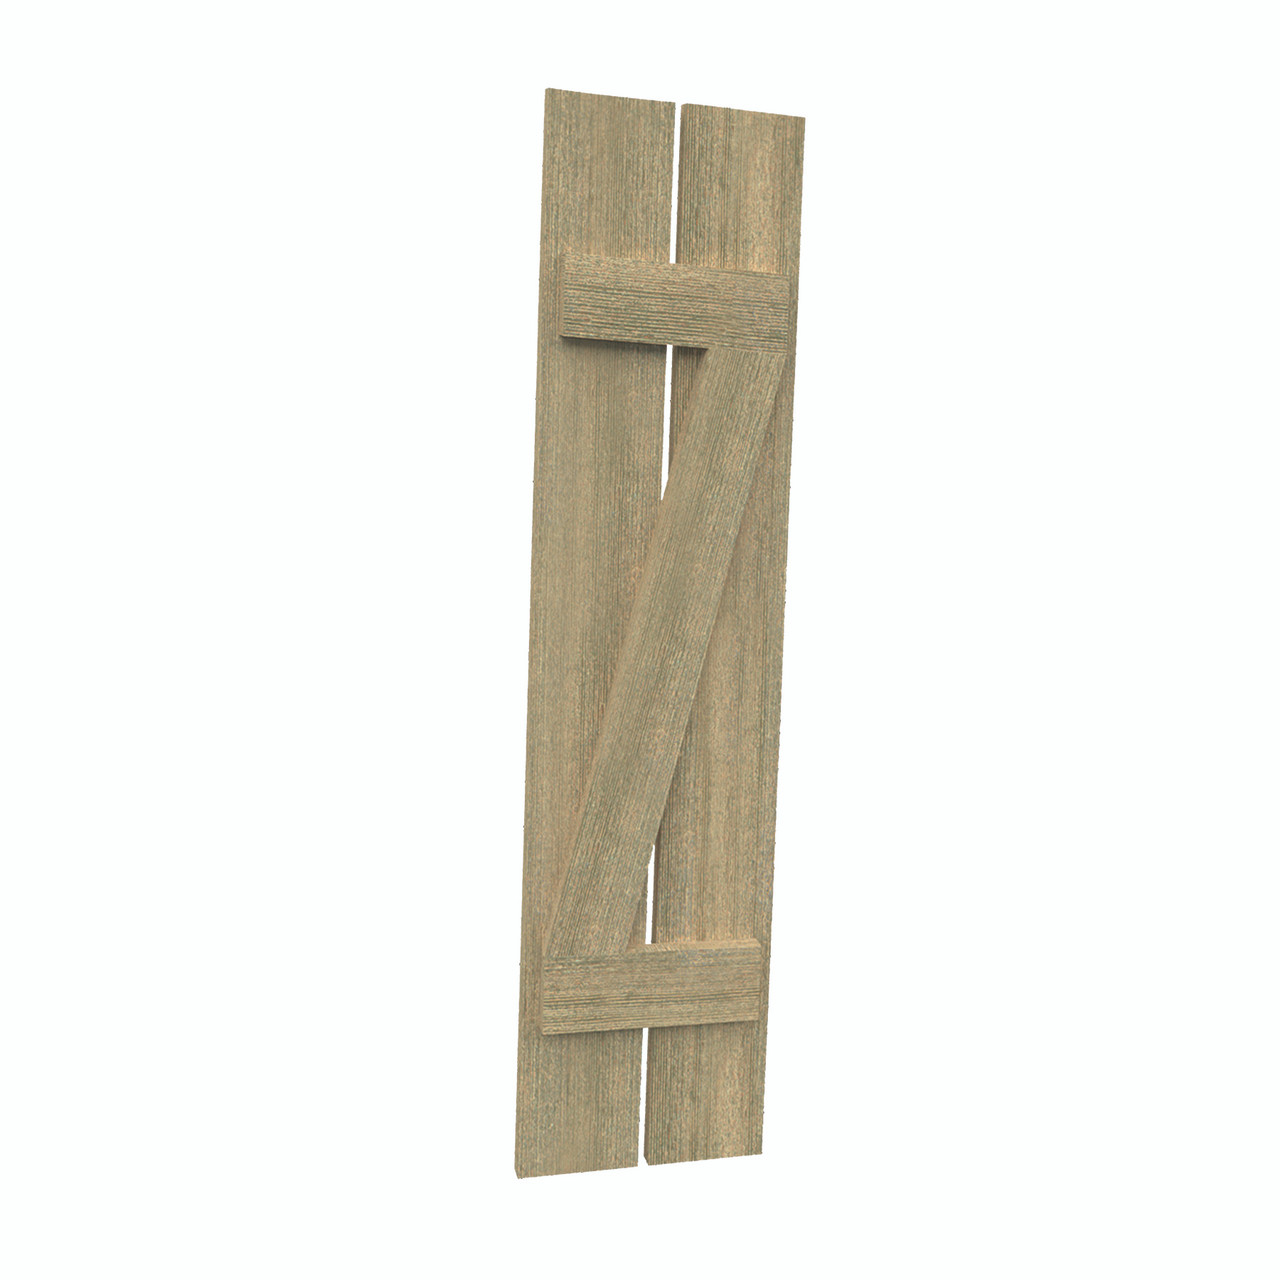 12 inch by 33 inch Plank Shutter with 2-Plank, Z-Batten